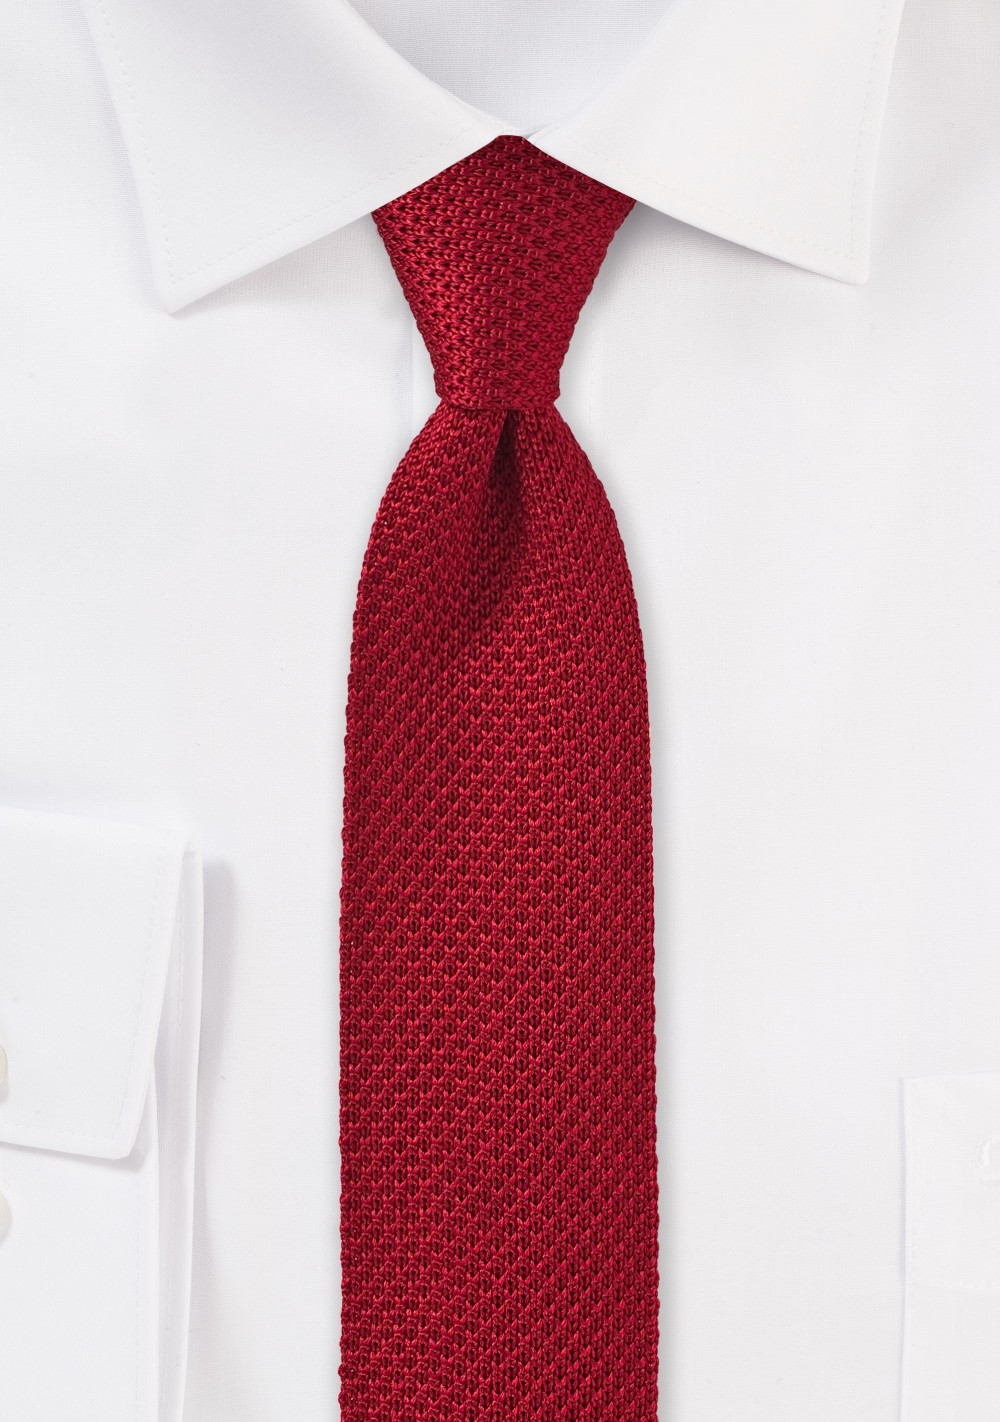 Cherry Red Skinny Knit Tie